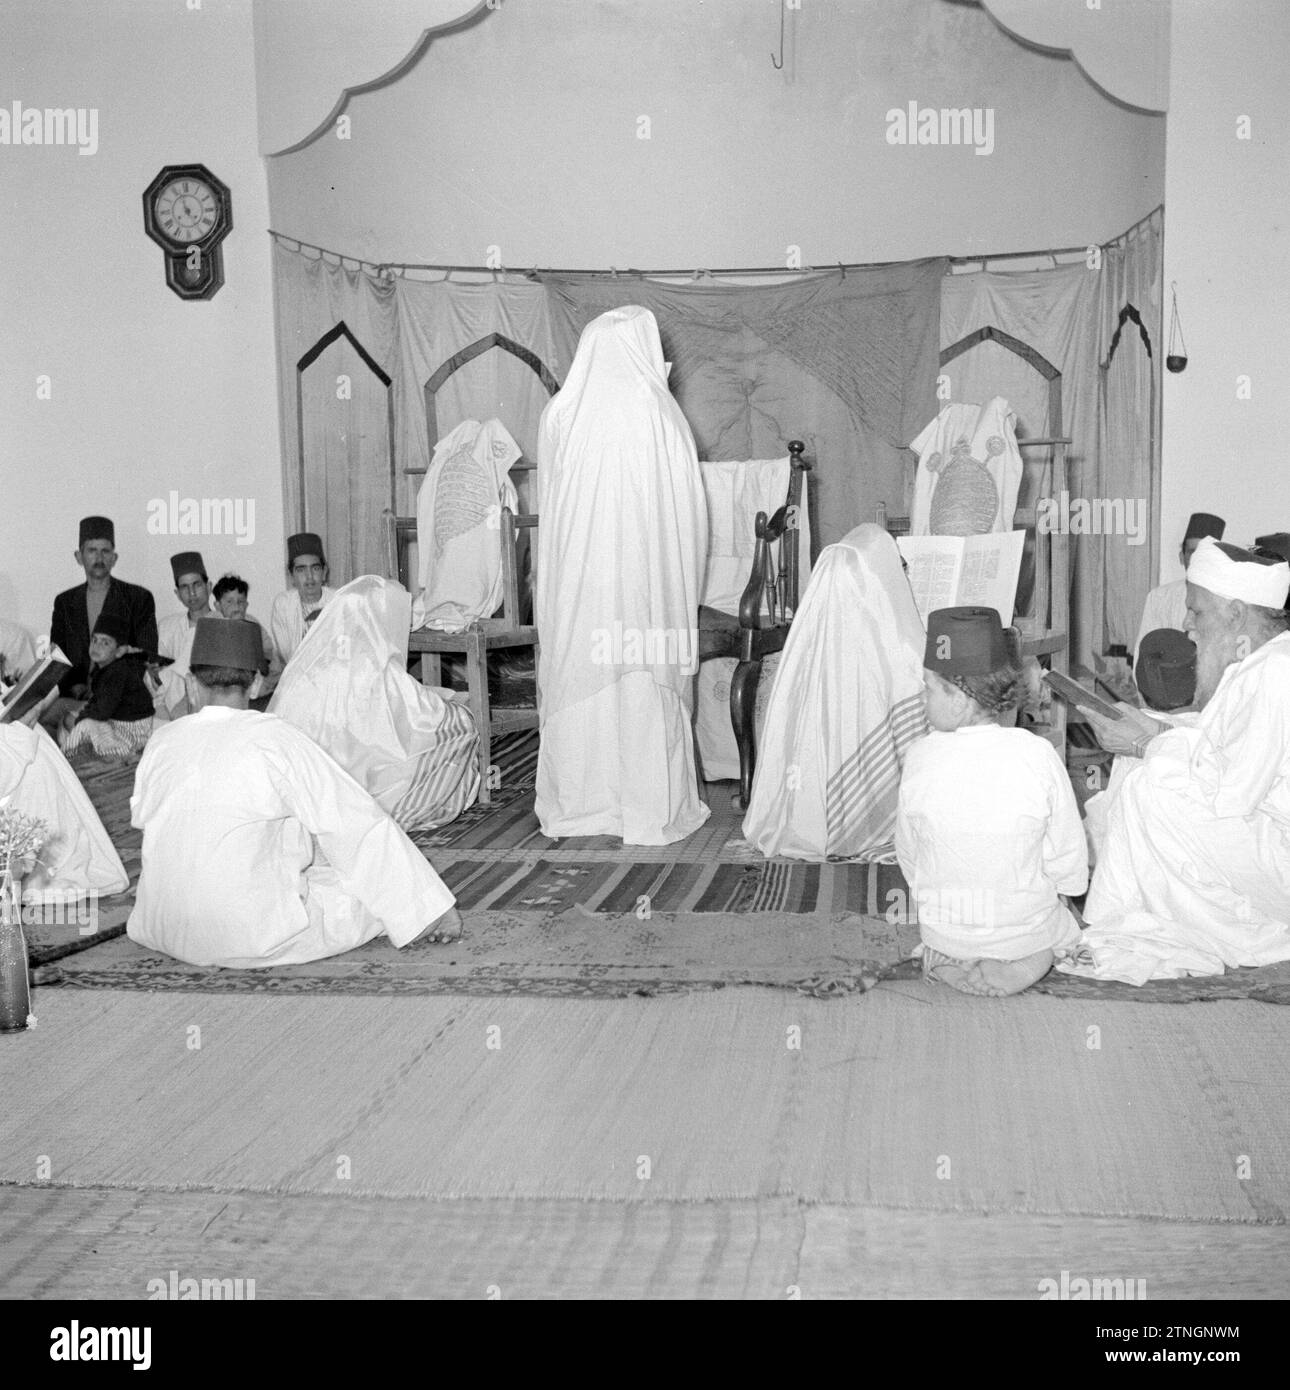 Un groupe de Samaritains dans leur maison de prière lisant leurs écritures (parchemin de prière) ca. 1950-1955 Banque D'Images